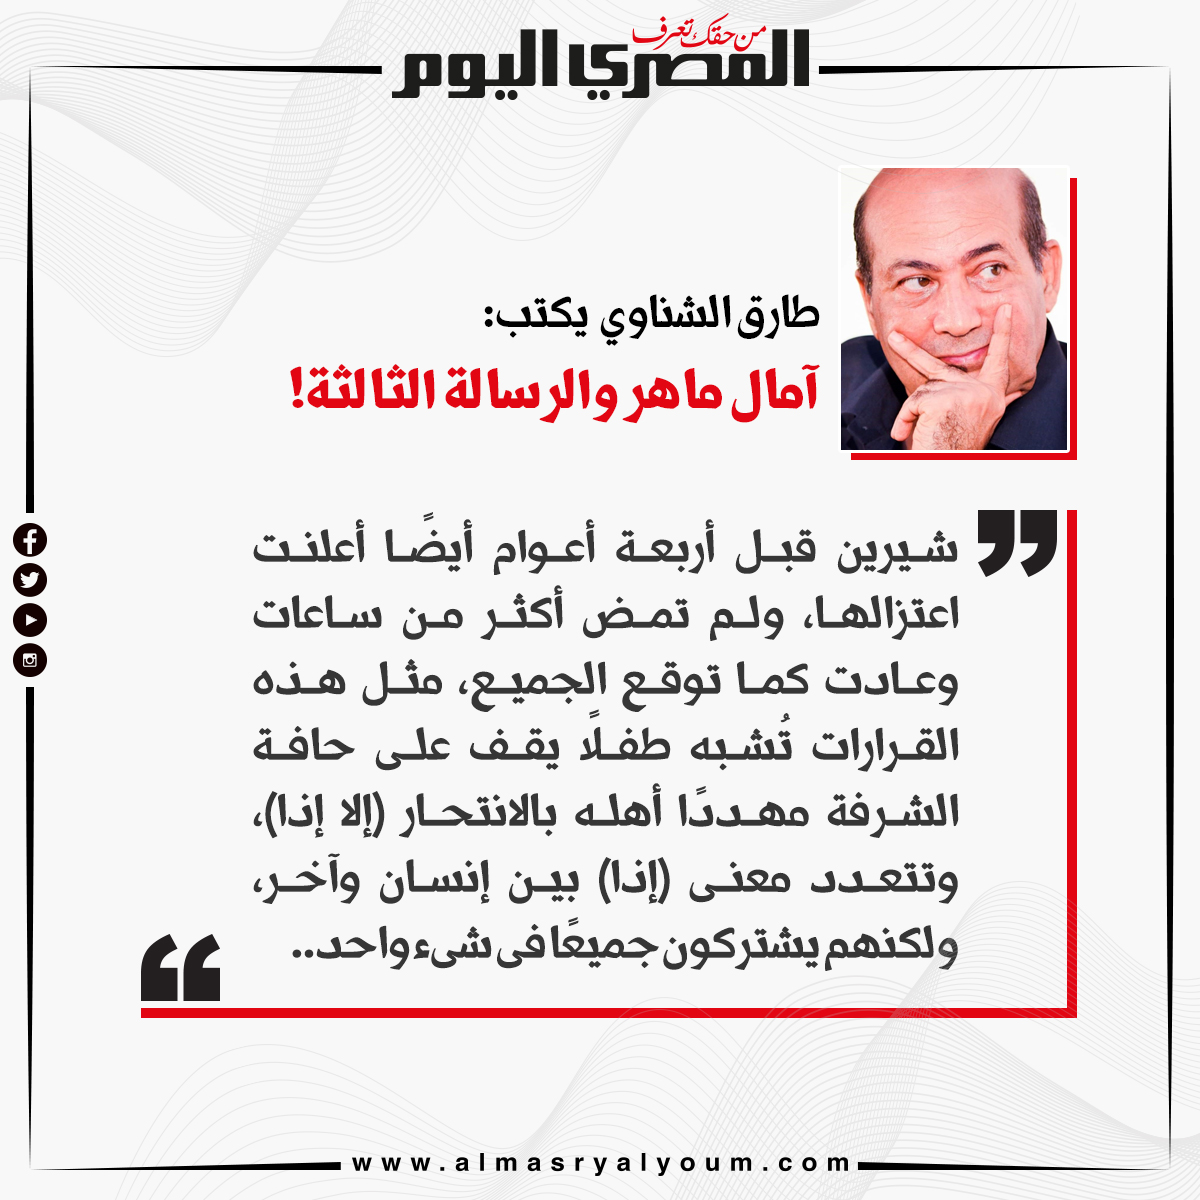 طارق الشناوي يكتب آمال ماهر والرسالة الثالثة!